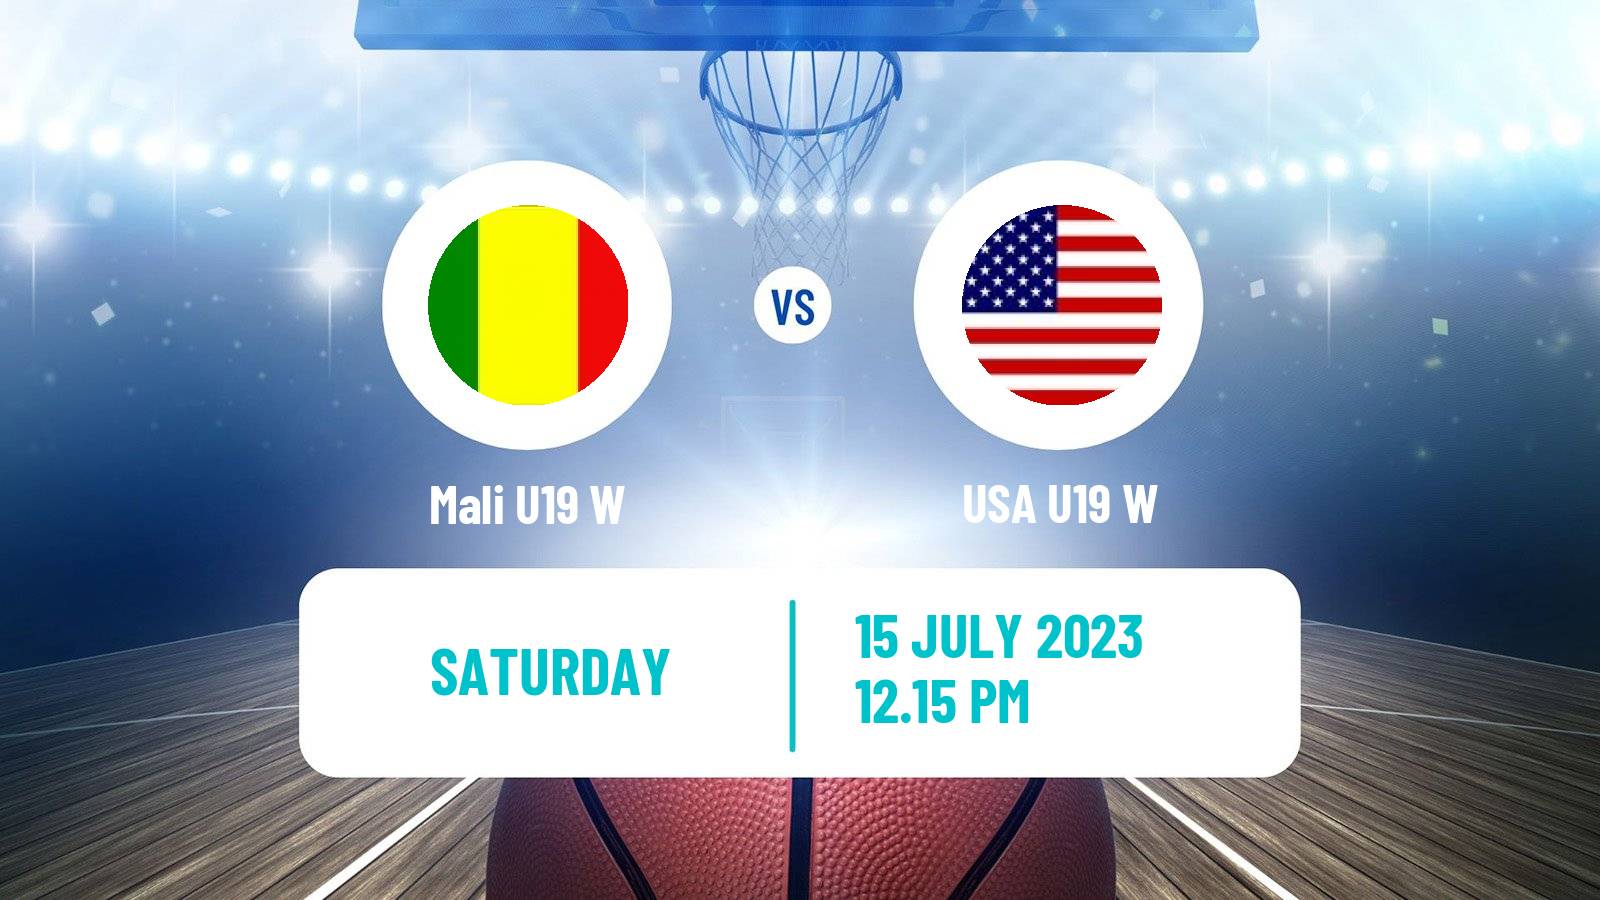 Basketball World Championship U19 Basketball Women Mali U19 W - USA U19 W